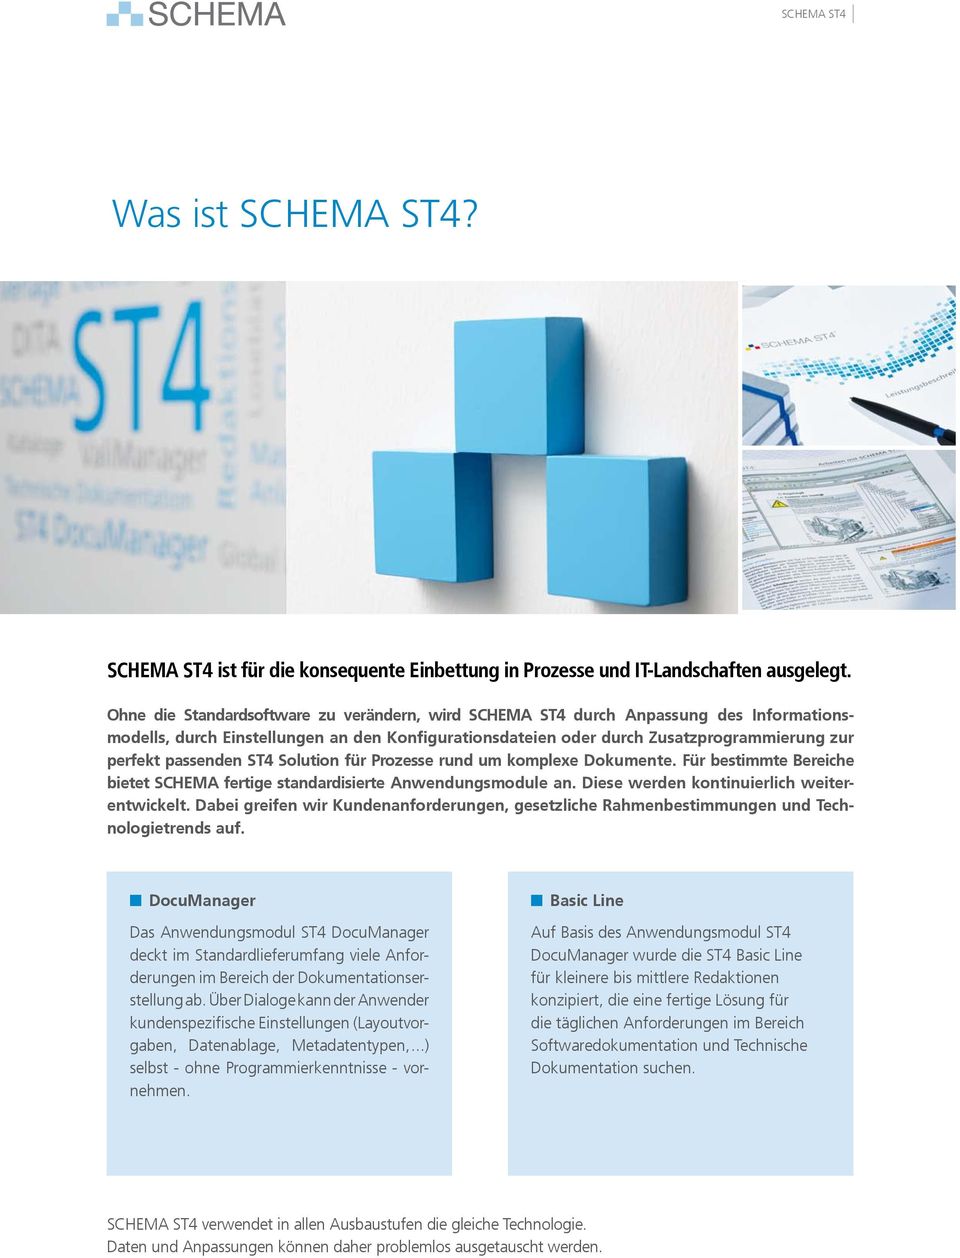 ST4 Solution für Prozesse rund um komplexe Dokumente. Für bestimmte Bereiche bietet SCHEMA fertige standardisierte Anwendungsmodule an. Diese werden kontinuierlich weiterentwickelt.